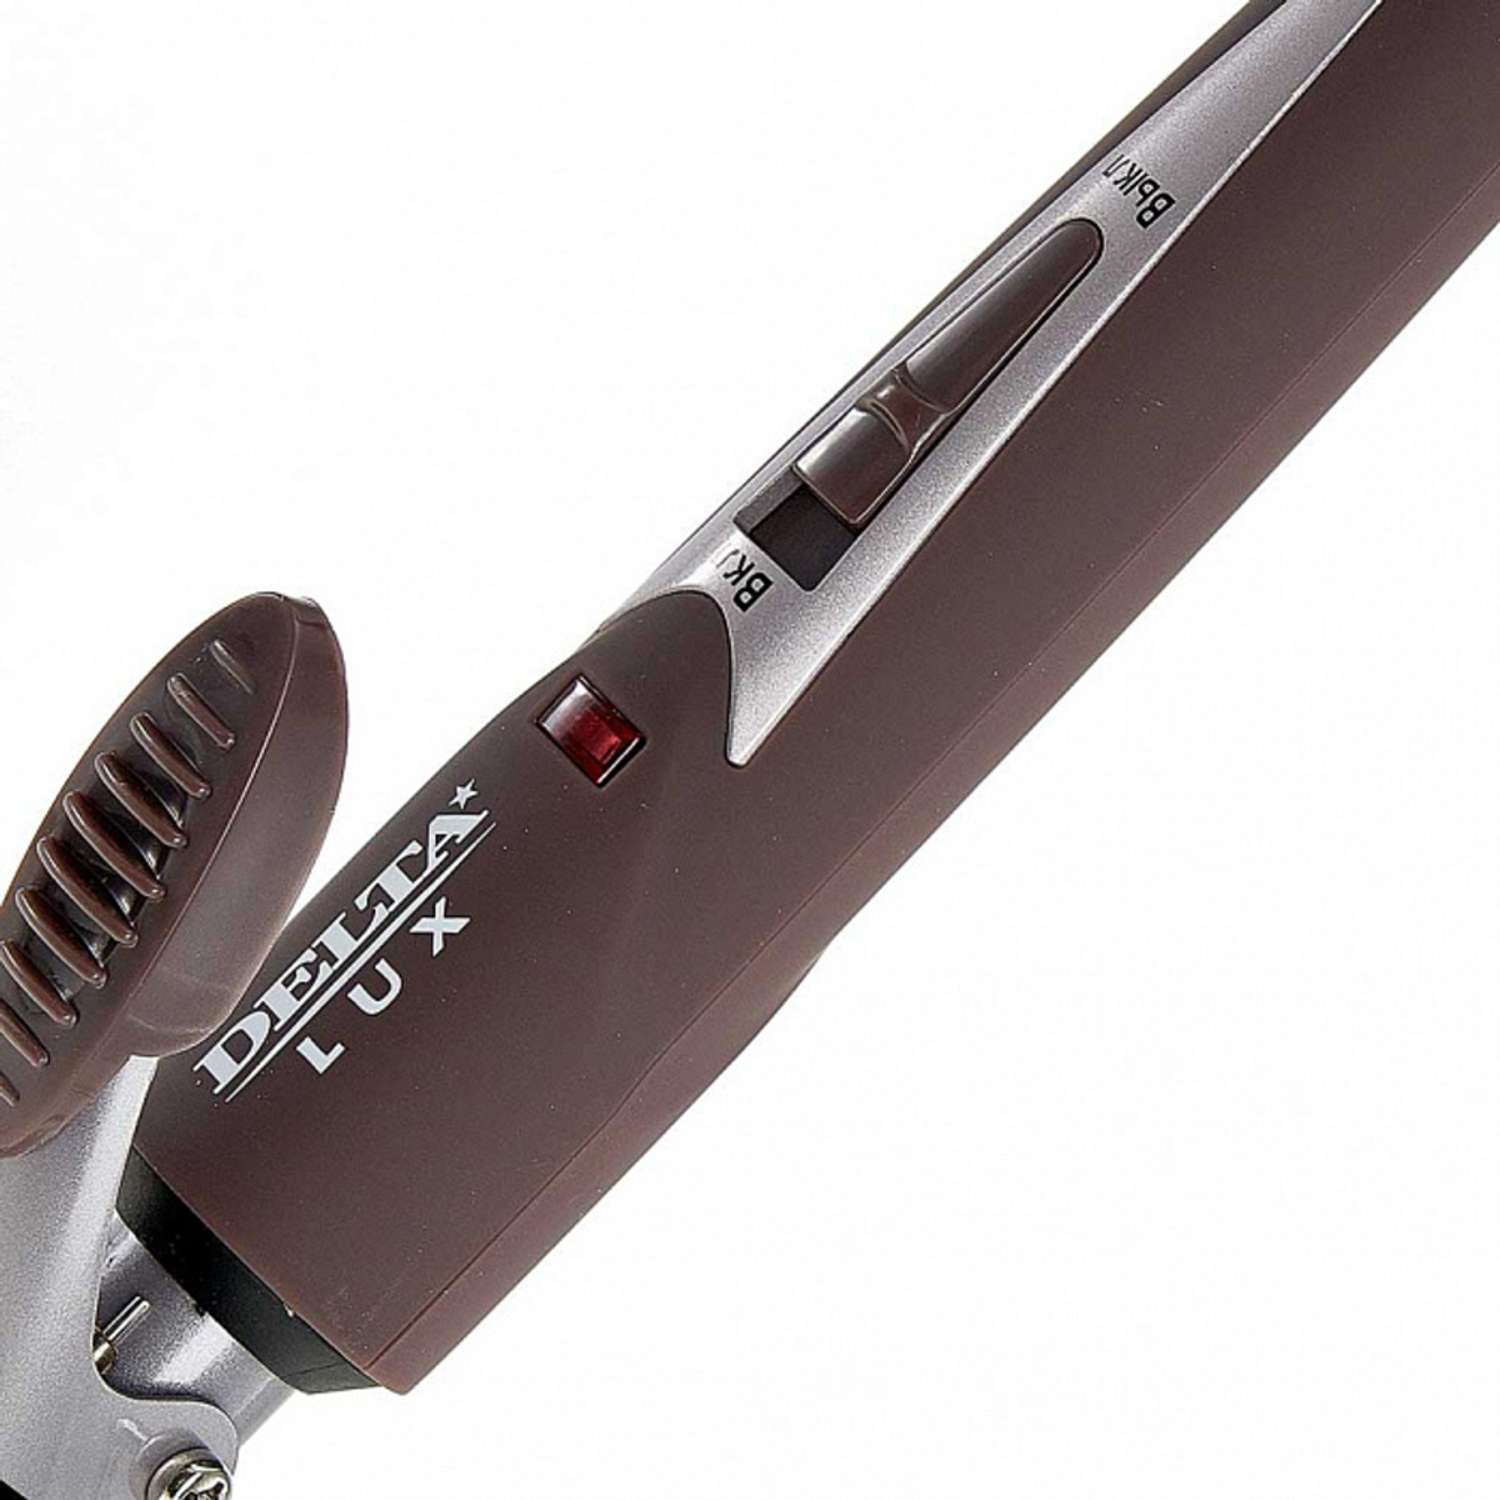 Стайлер для завивки волос Delta Lux DL-0630 коричневый керамическое покрытие d 19 мм 25 Вт - фото 4